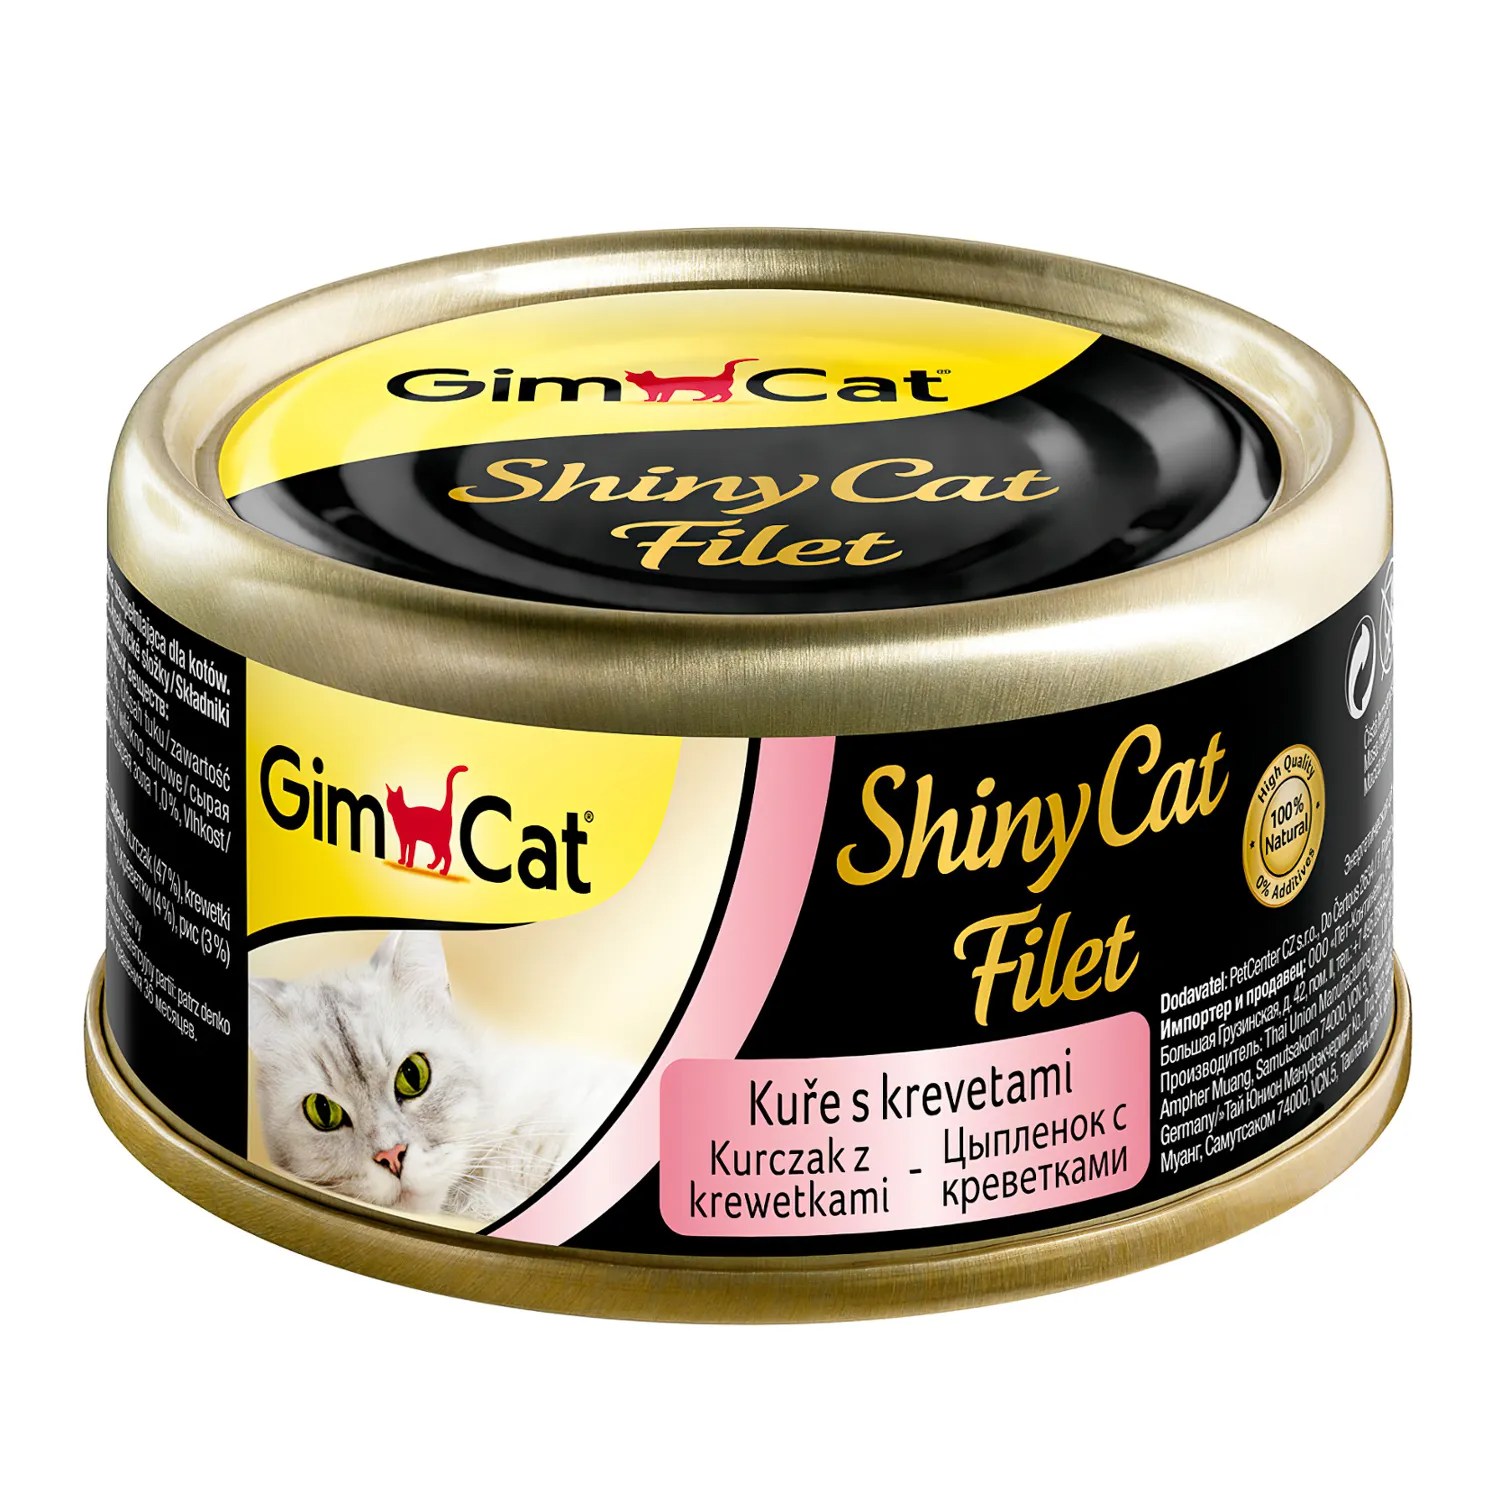 GimCat ShinyCat Filet Цыпленок/Креветки консервы для кошек 70 г 1